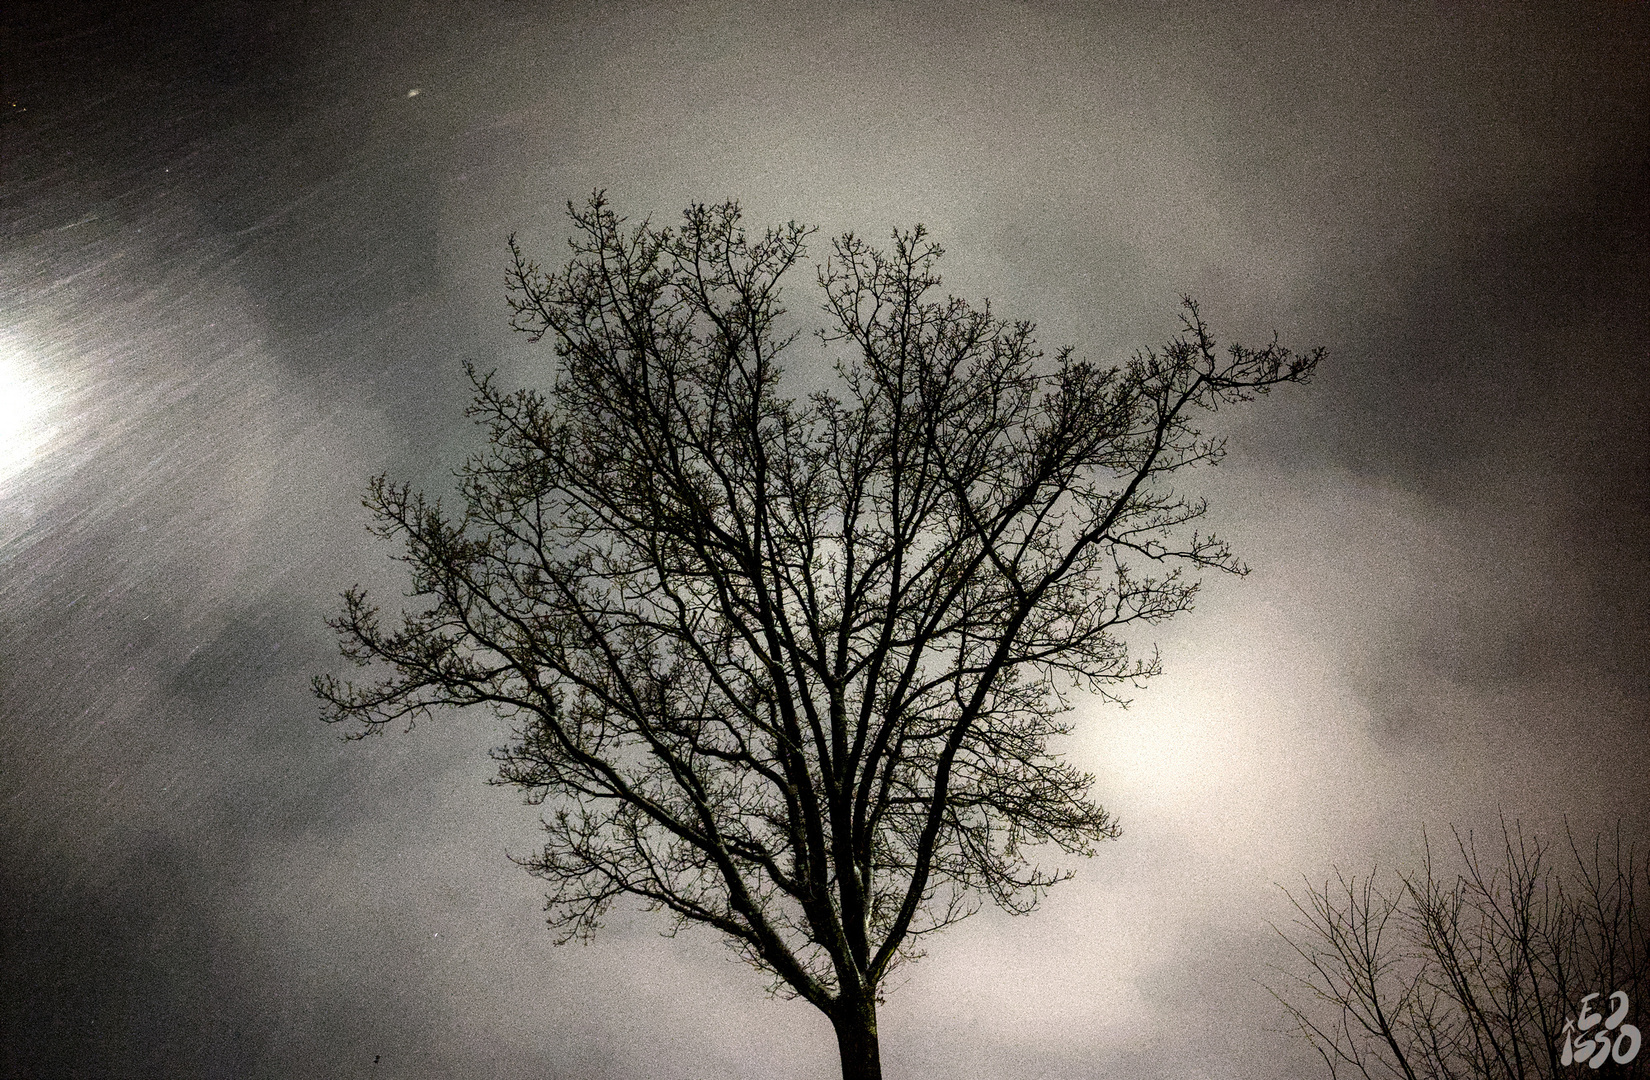 Baum in der Nacht bei leichtem Schneefall